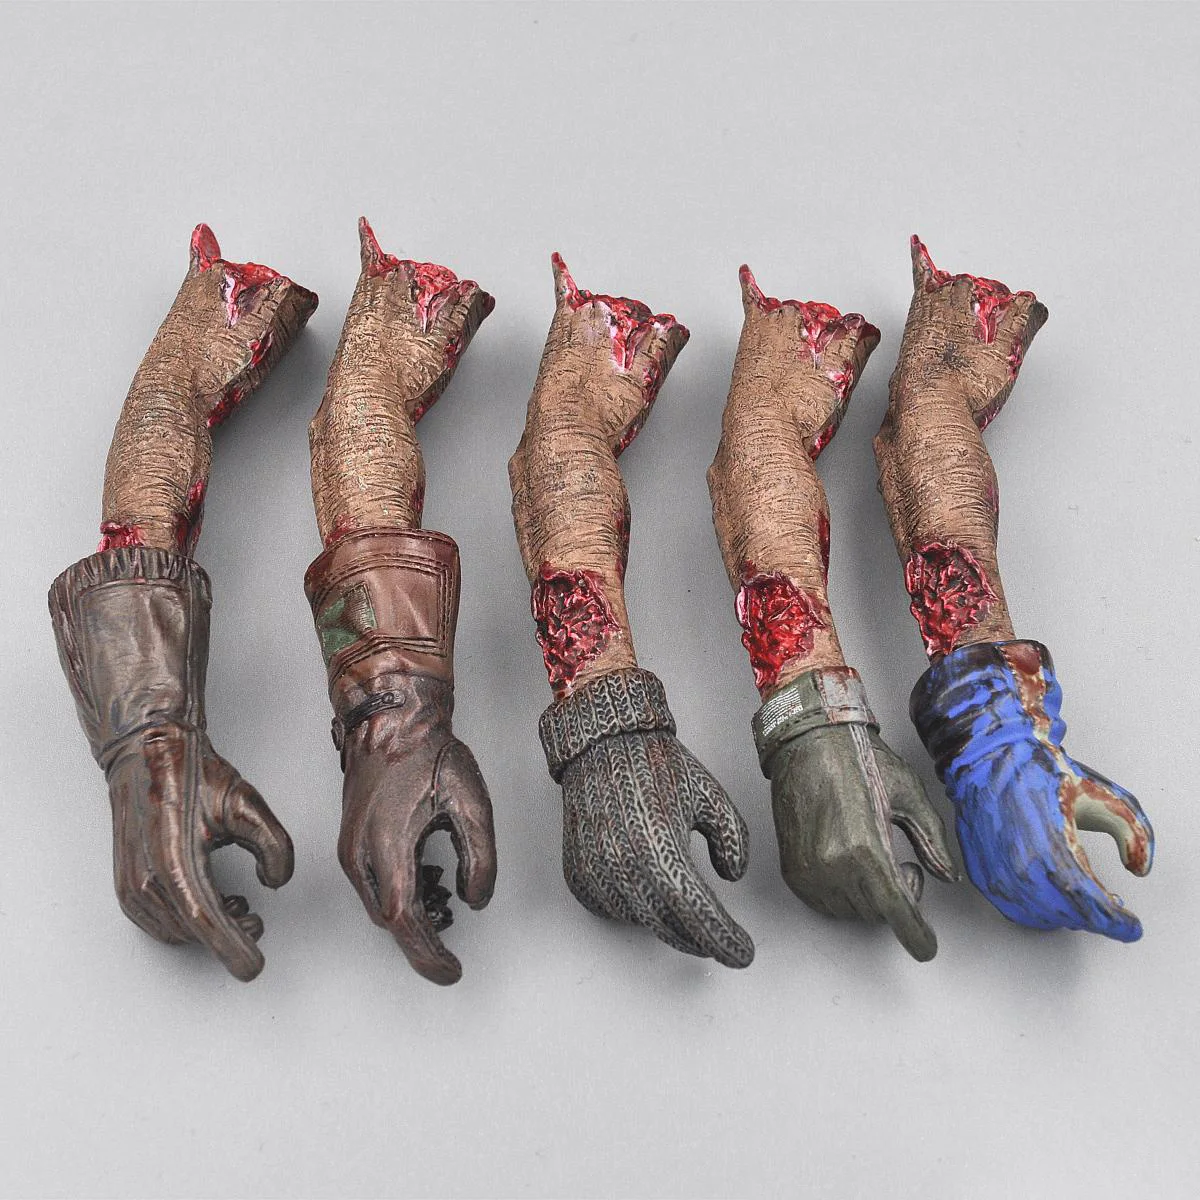 

Модель Куклы-мутанта зомби в масштабе 1/6, 12 дюймов, подвижные аксессуары для кукол, статическое украшение, коллекционные демонстрационные игрушки